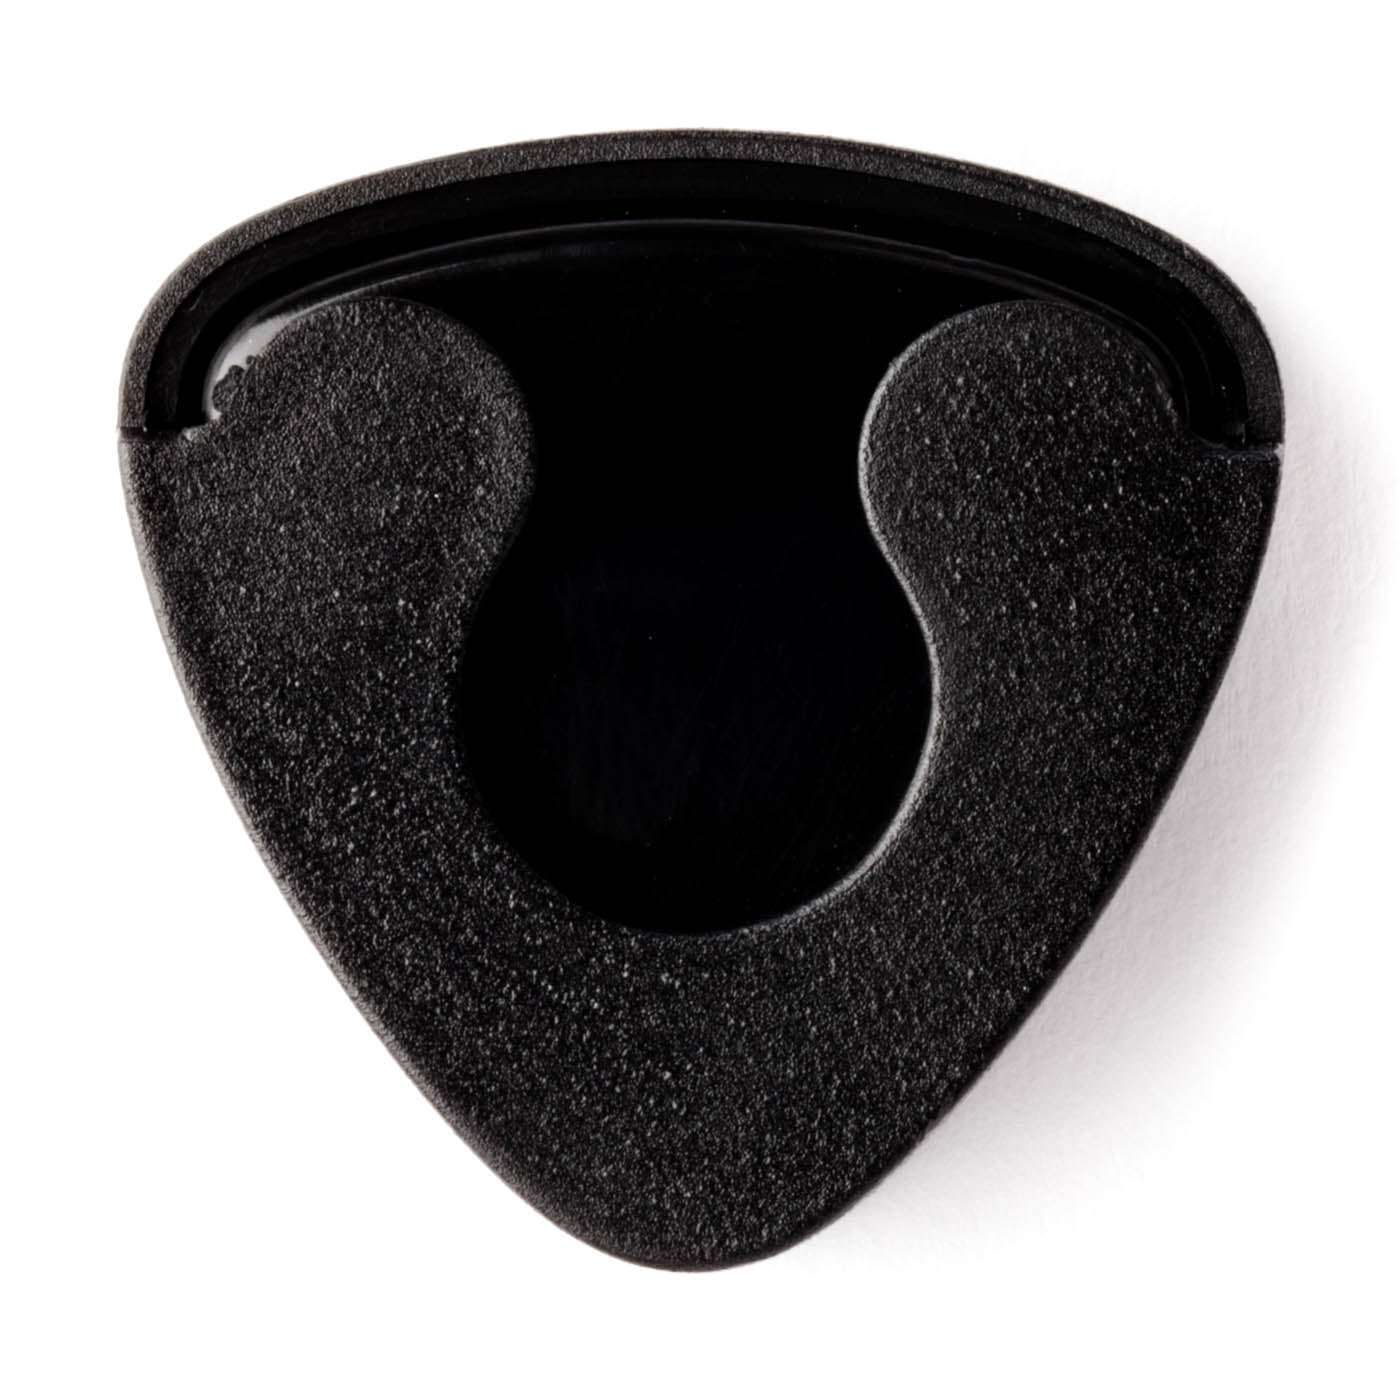 Dunlop Guitar Pick Holder - Black